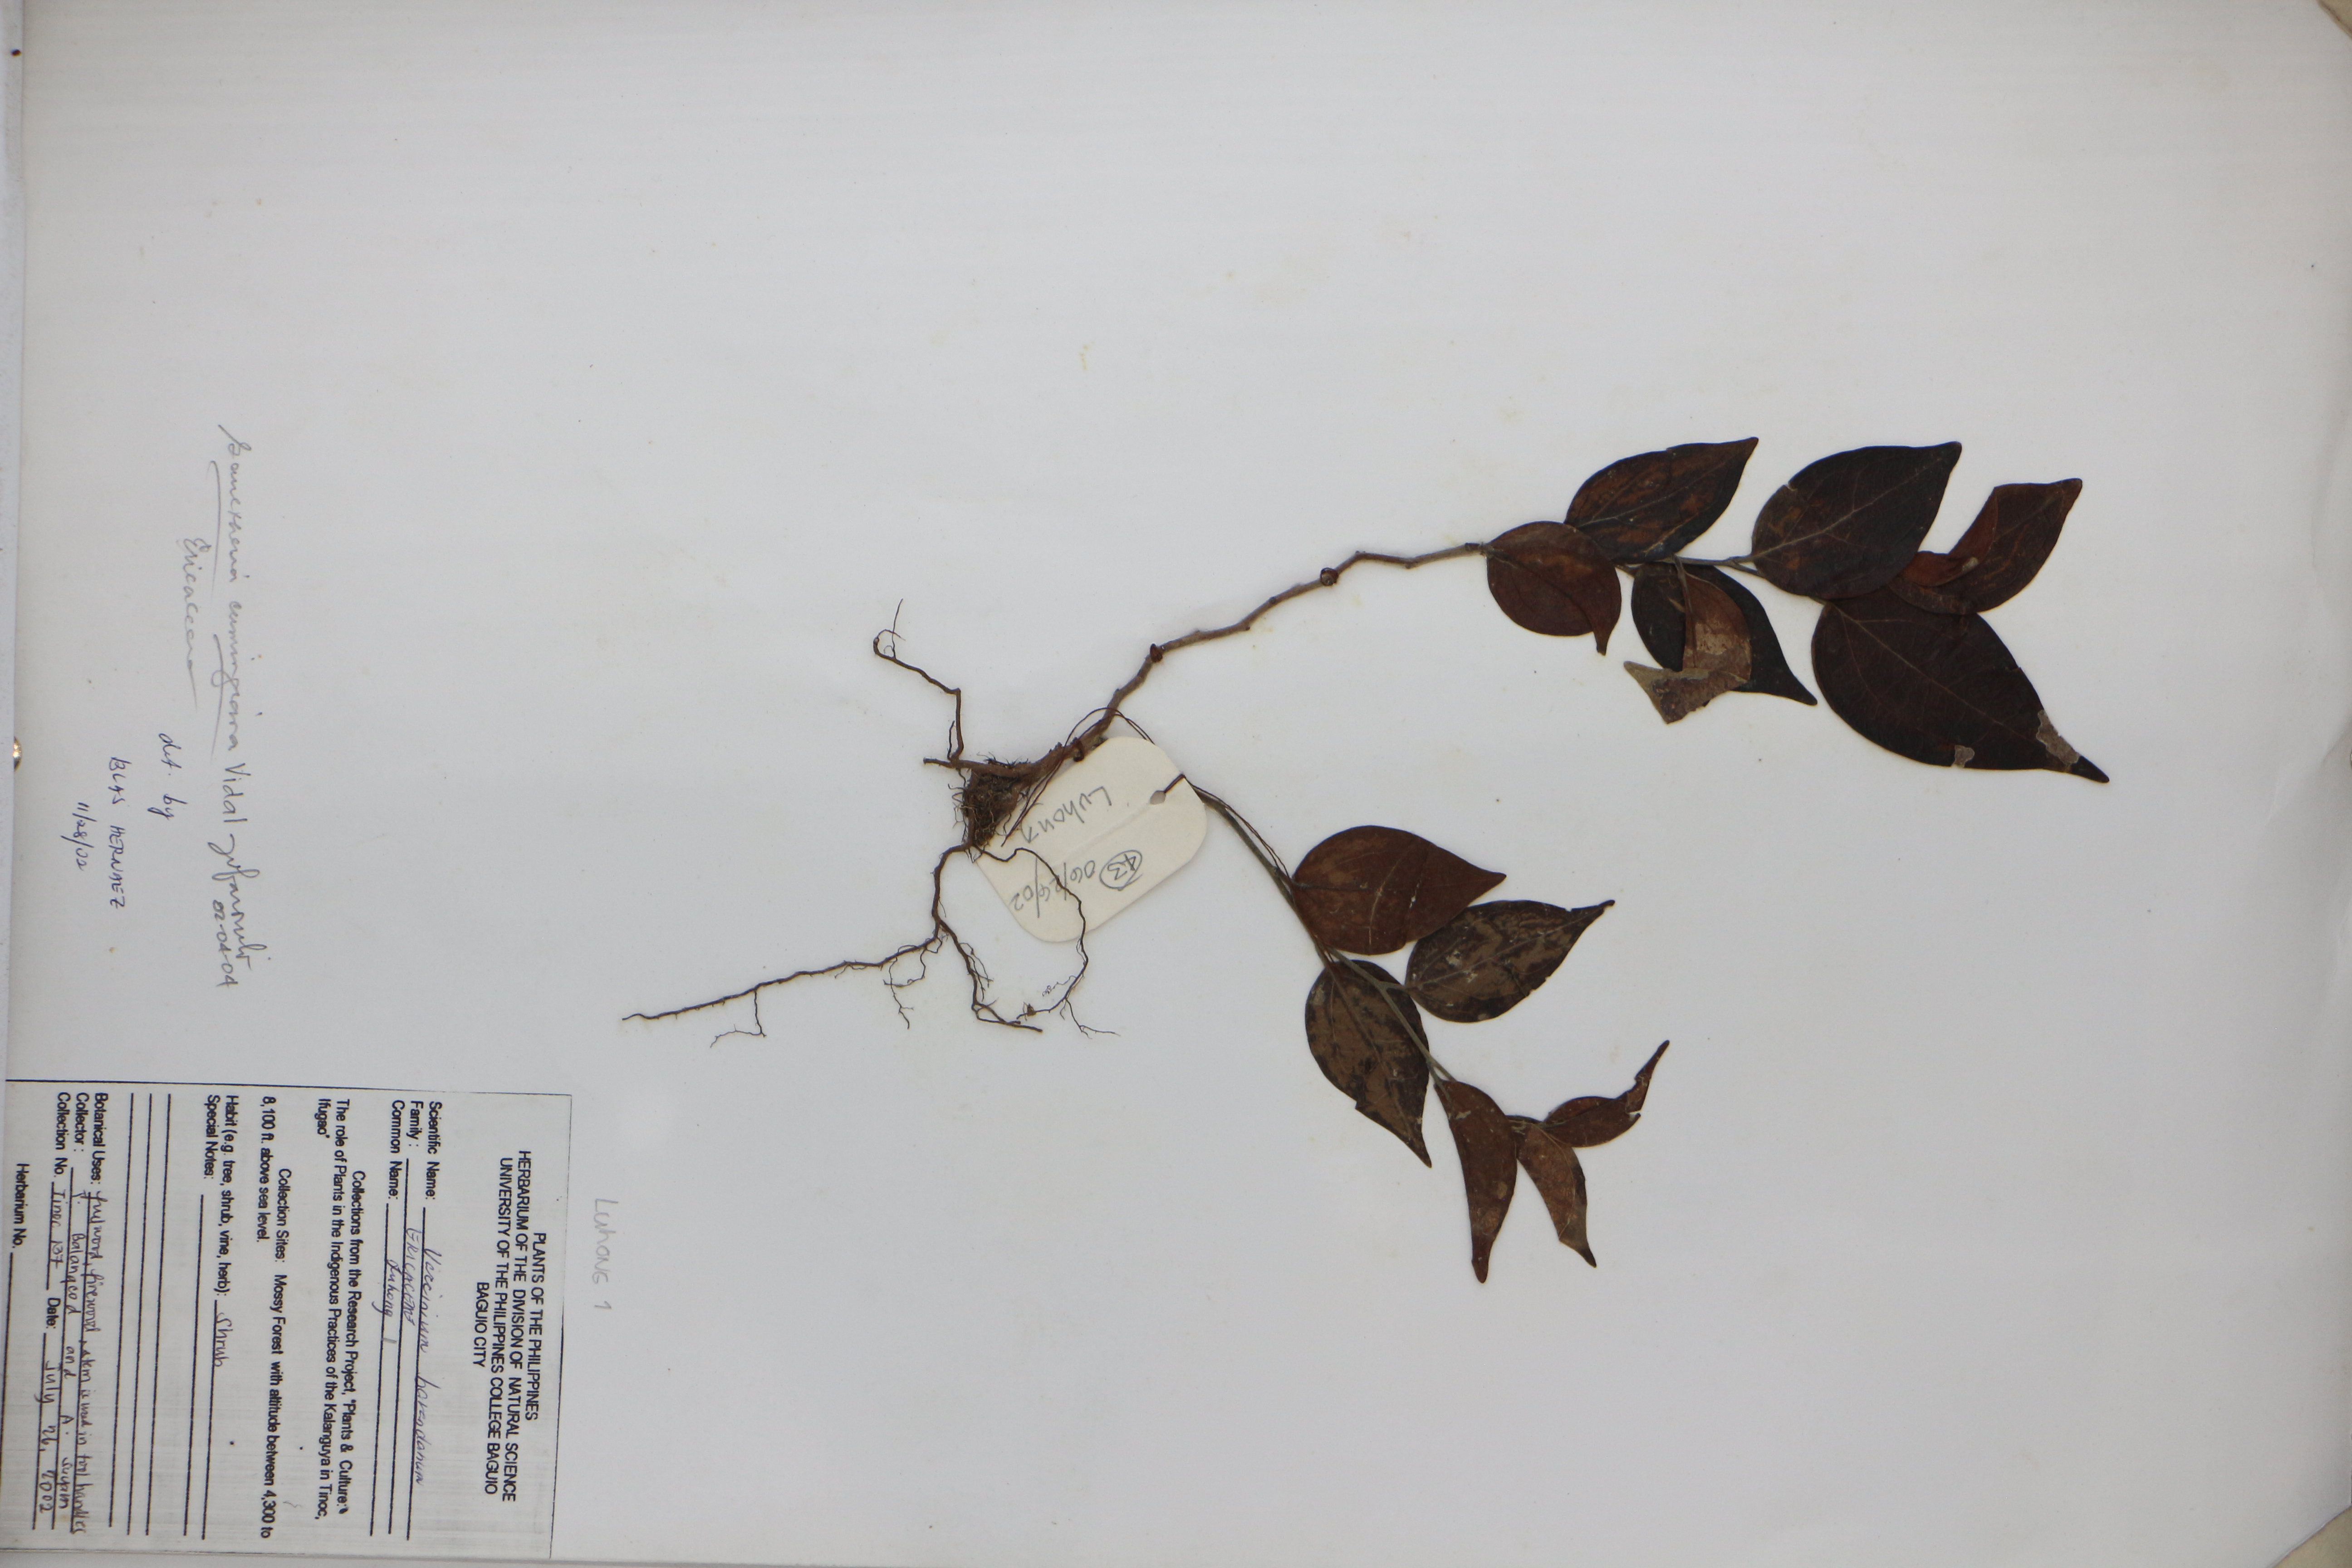 Gaultheria leucocarpa var. cumingiana